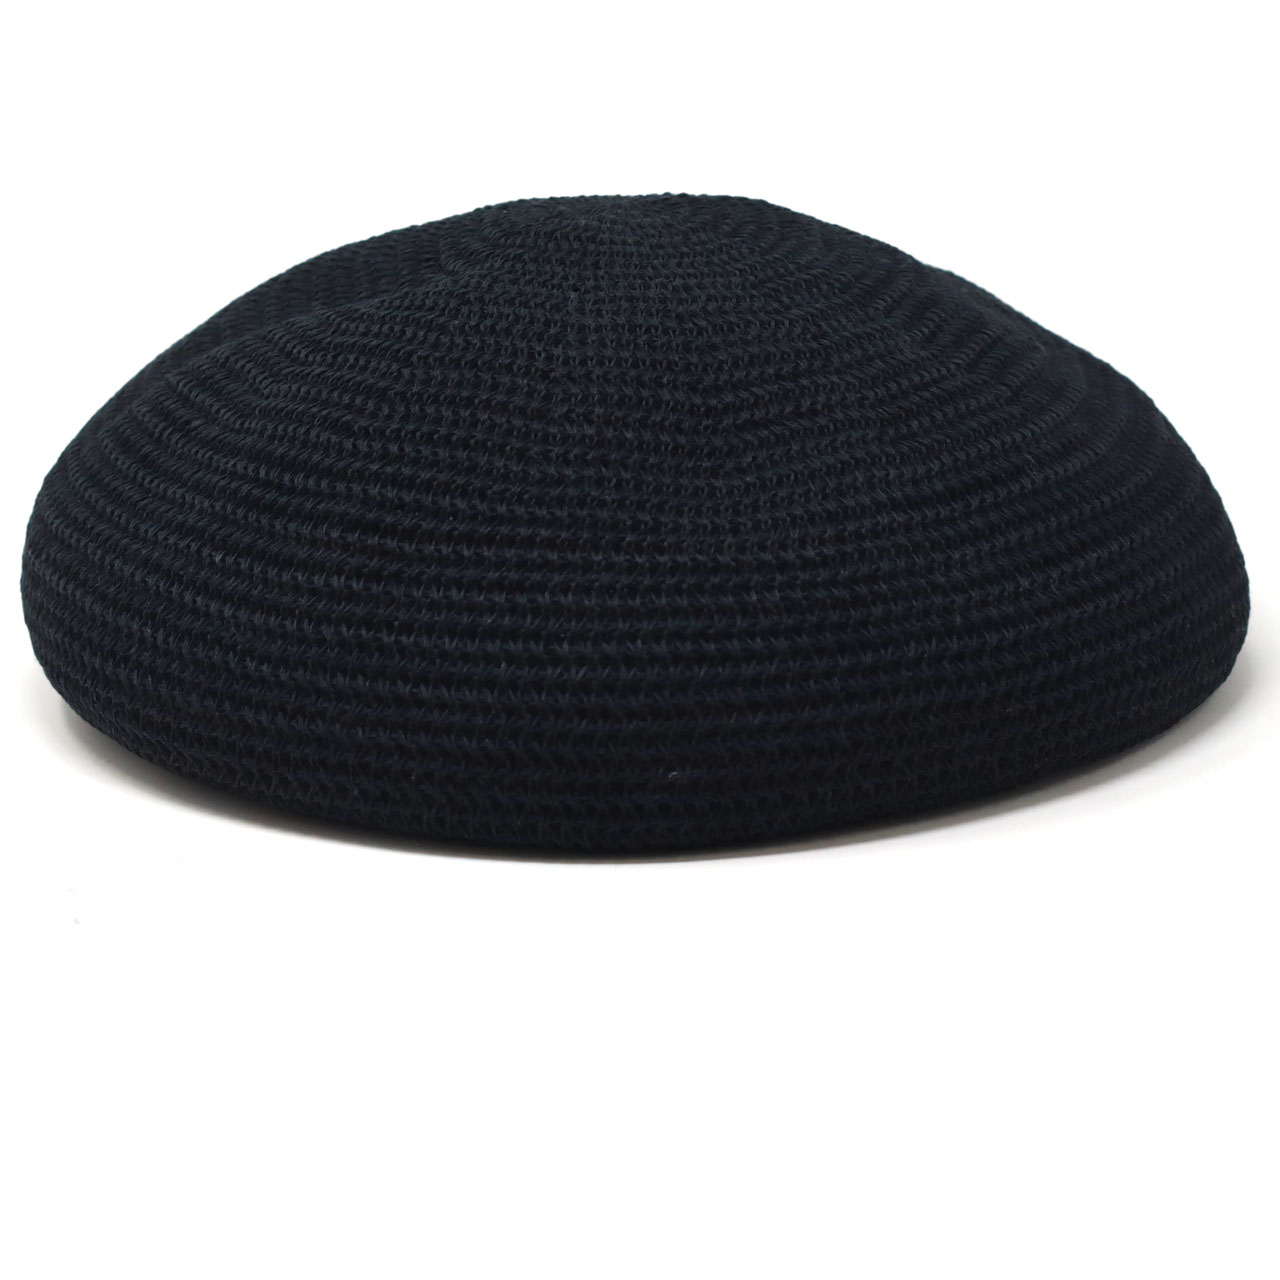 ギマコットン ベレー レディース ニット帽 メンズ 日本製 帽子 メンズ ニット ベレー帽 メンズ ...